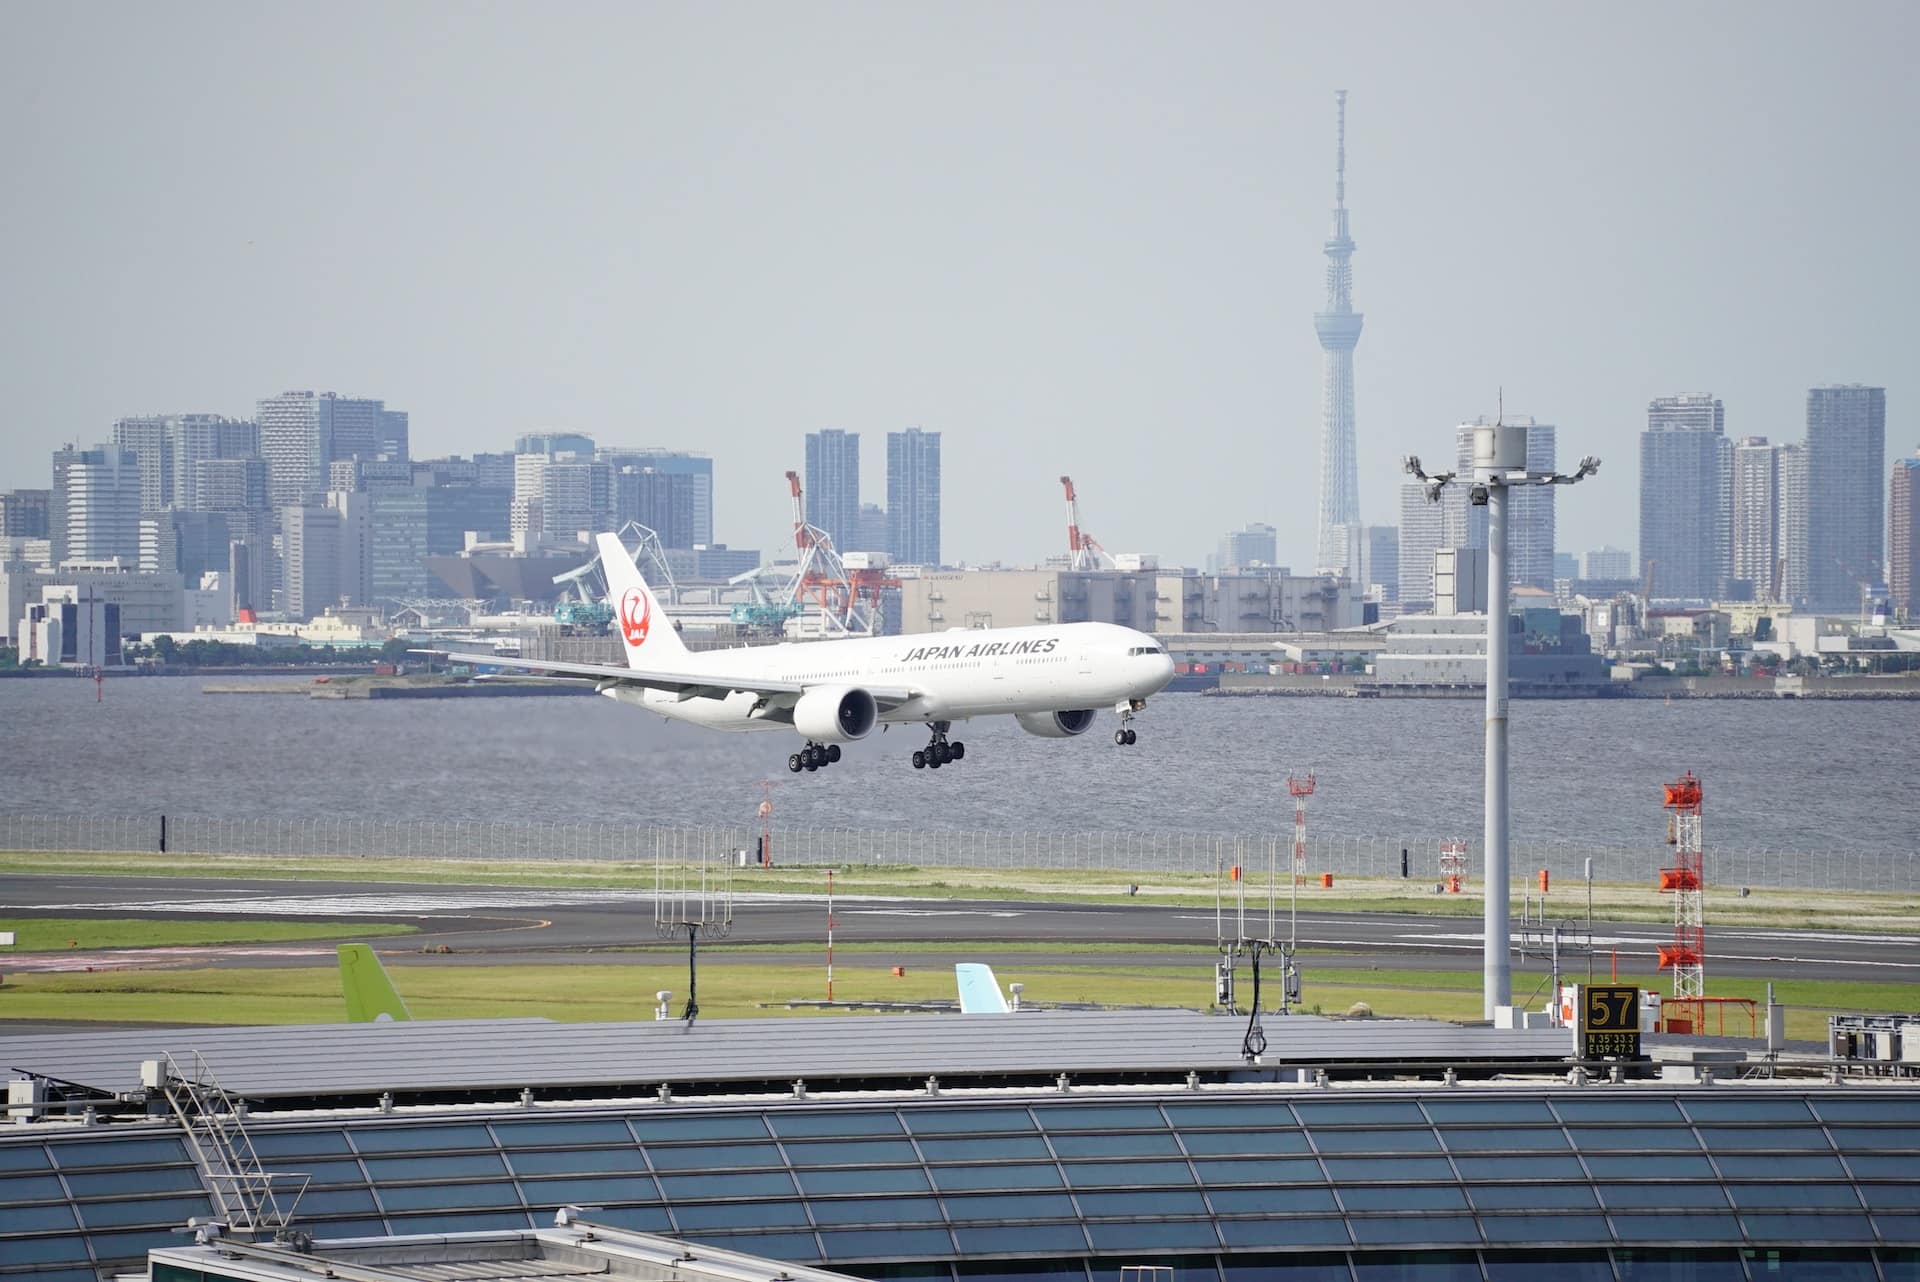 Seu de l'aeroport de Haneda, Ota serveix de porta d'entrada a Tòquio per a molts visitants internacionals.